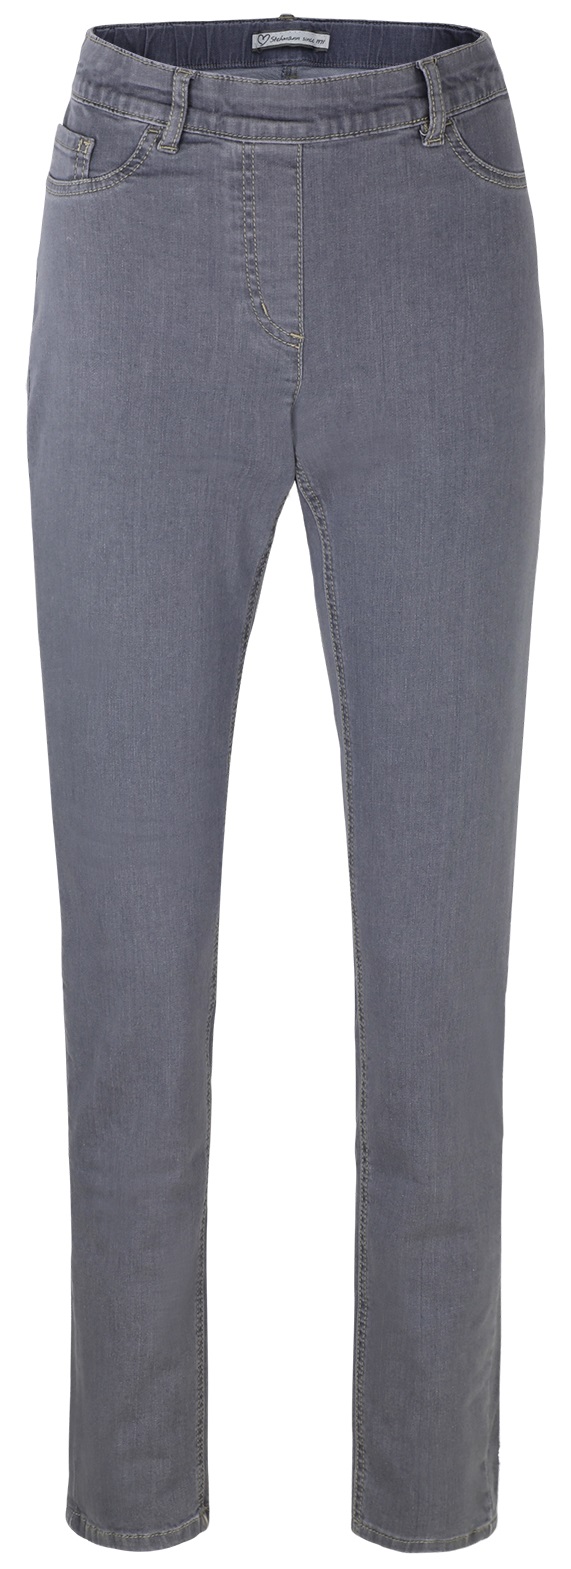 Stehmann, Sissi-780W weiche Slim-Fit Jeans mit elastischem Bund | GioMilano